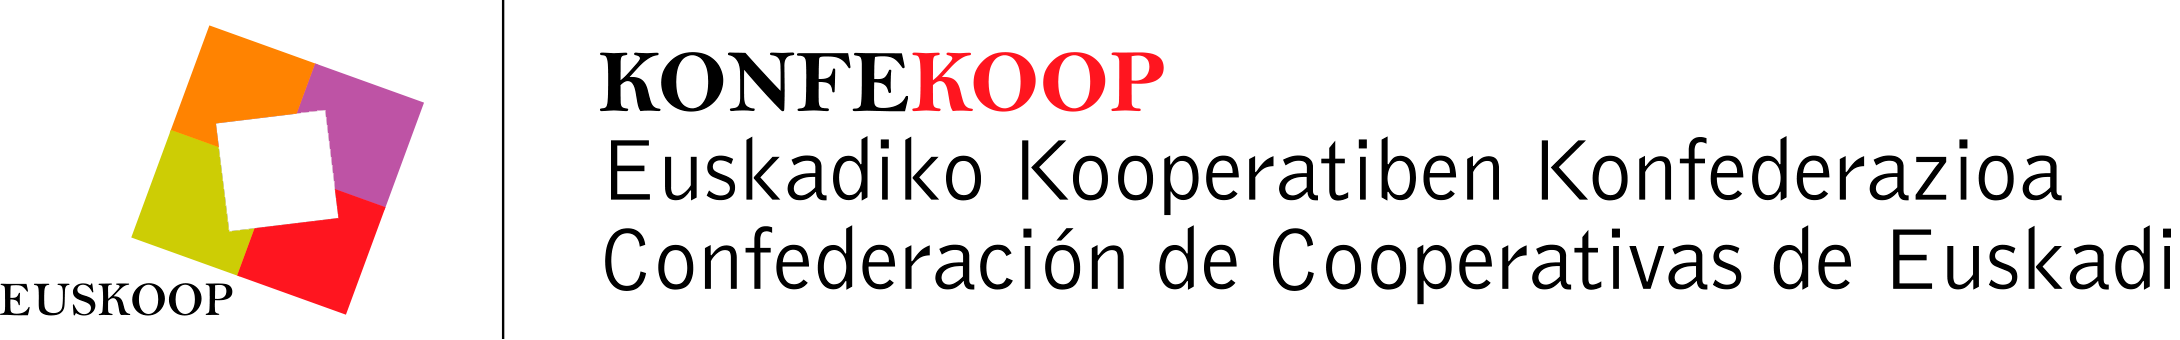 konfekoop_logo